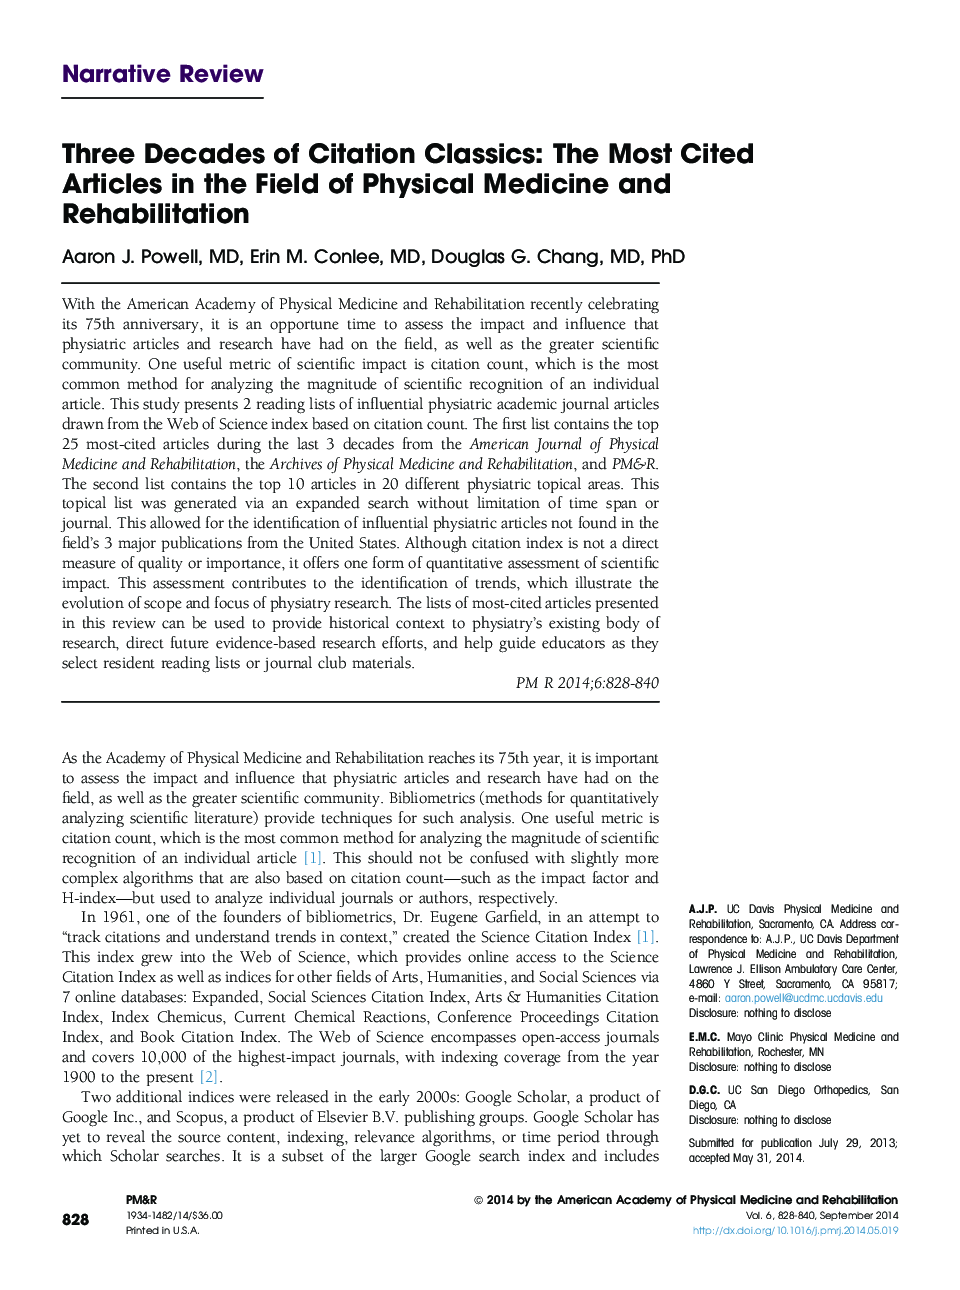 سه دهه از کلاسیک استناد: مقالات بیشتر در زمینه پزشکی فیزیکی و توانبخشی 